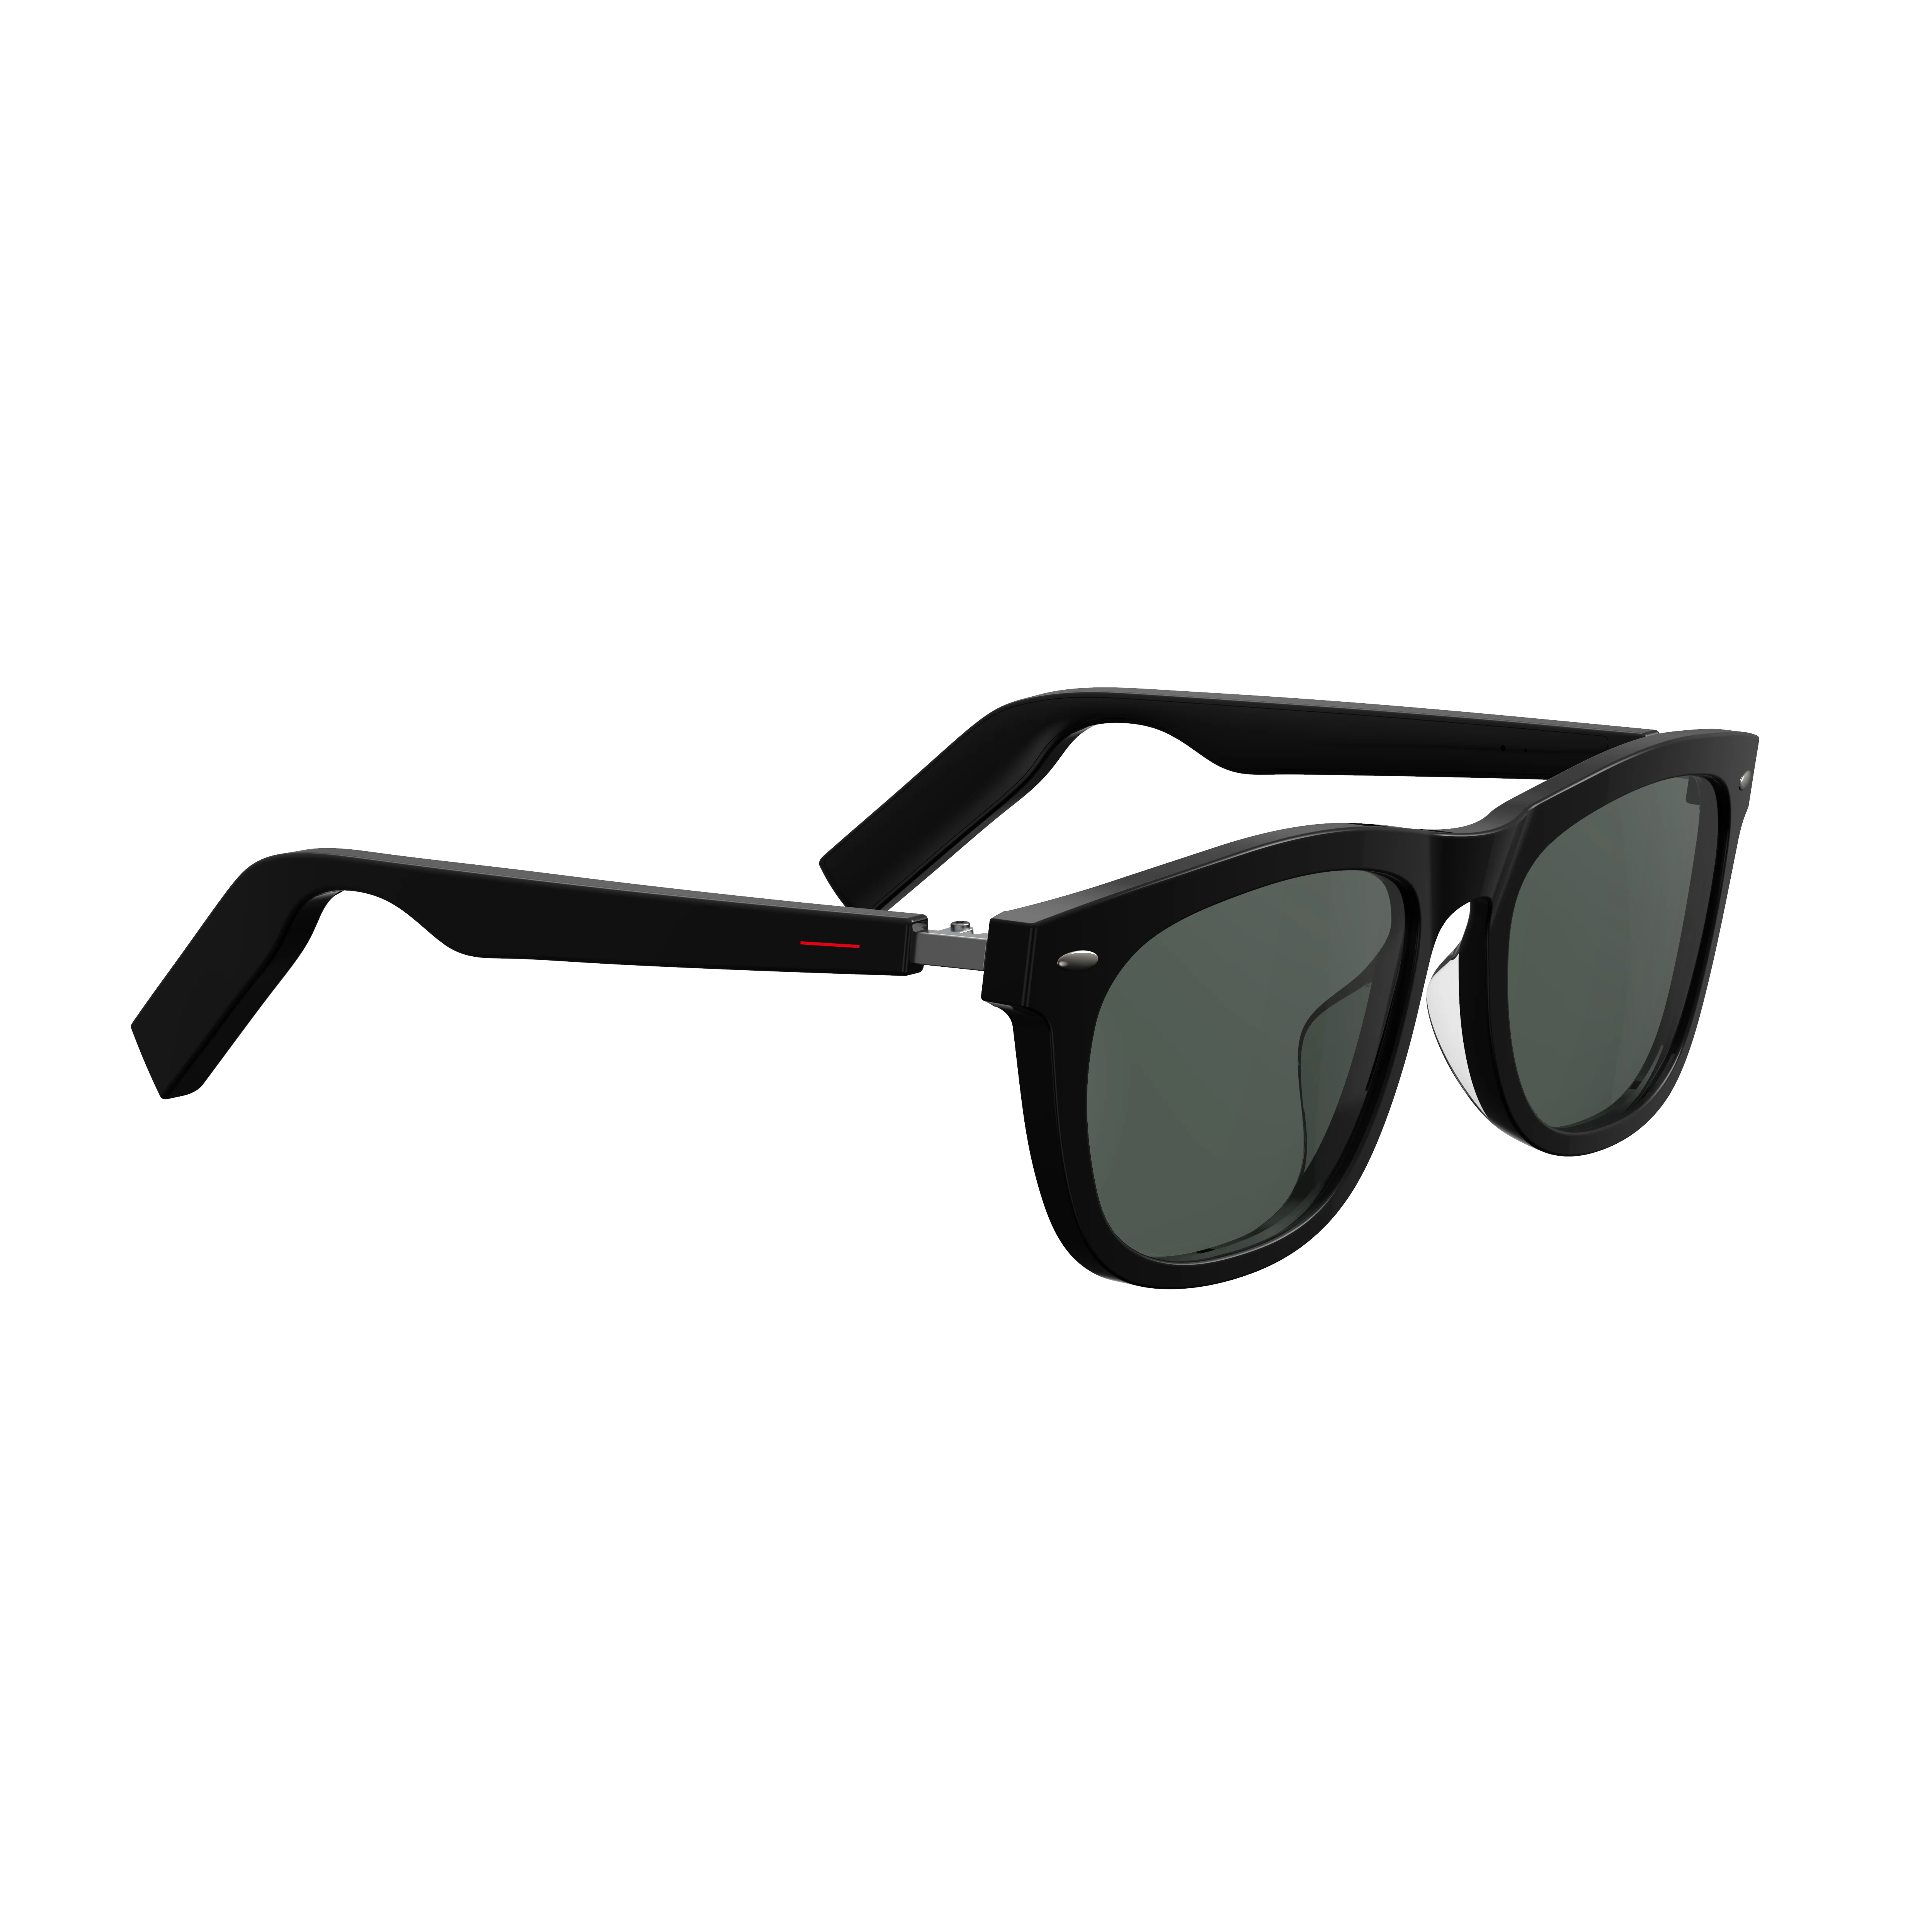 구매 블루투스 스마트 안경 음악 음성 통화 선글라스와 일치 가능, 처방 렌즈 호환 IOS 안드로이드 전화 헤드폰